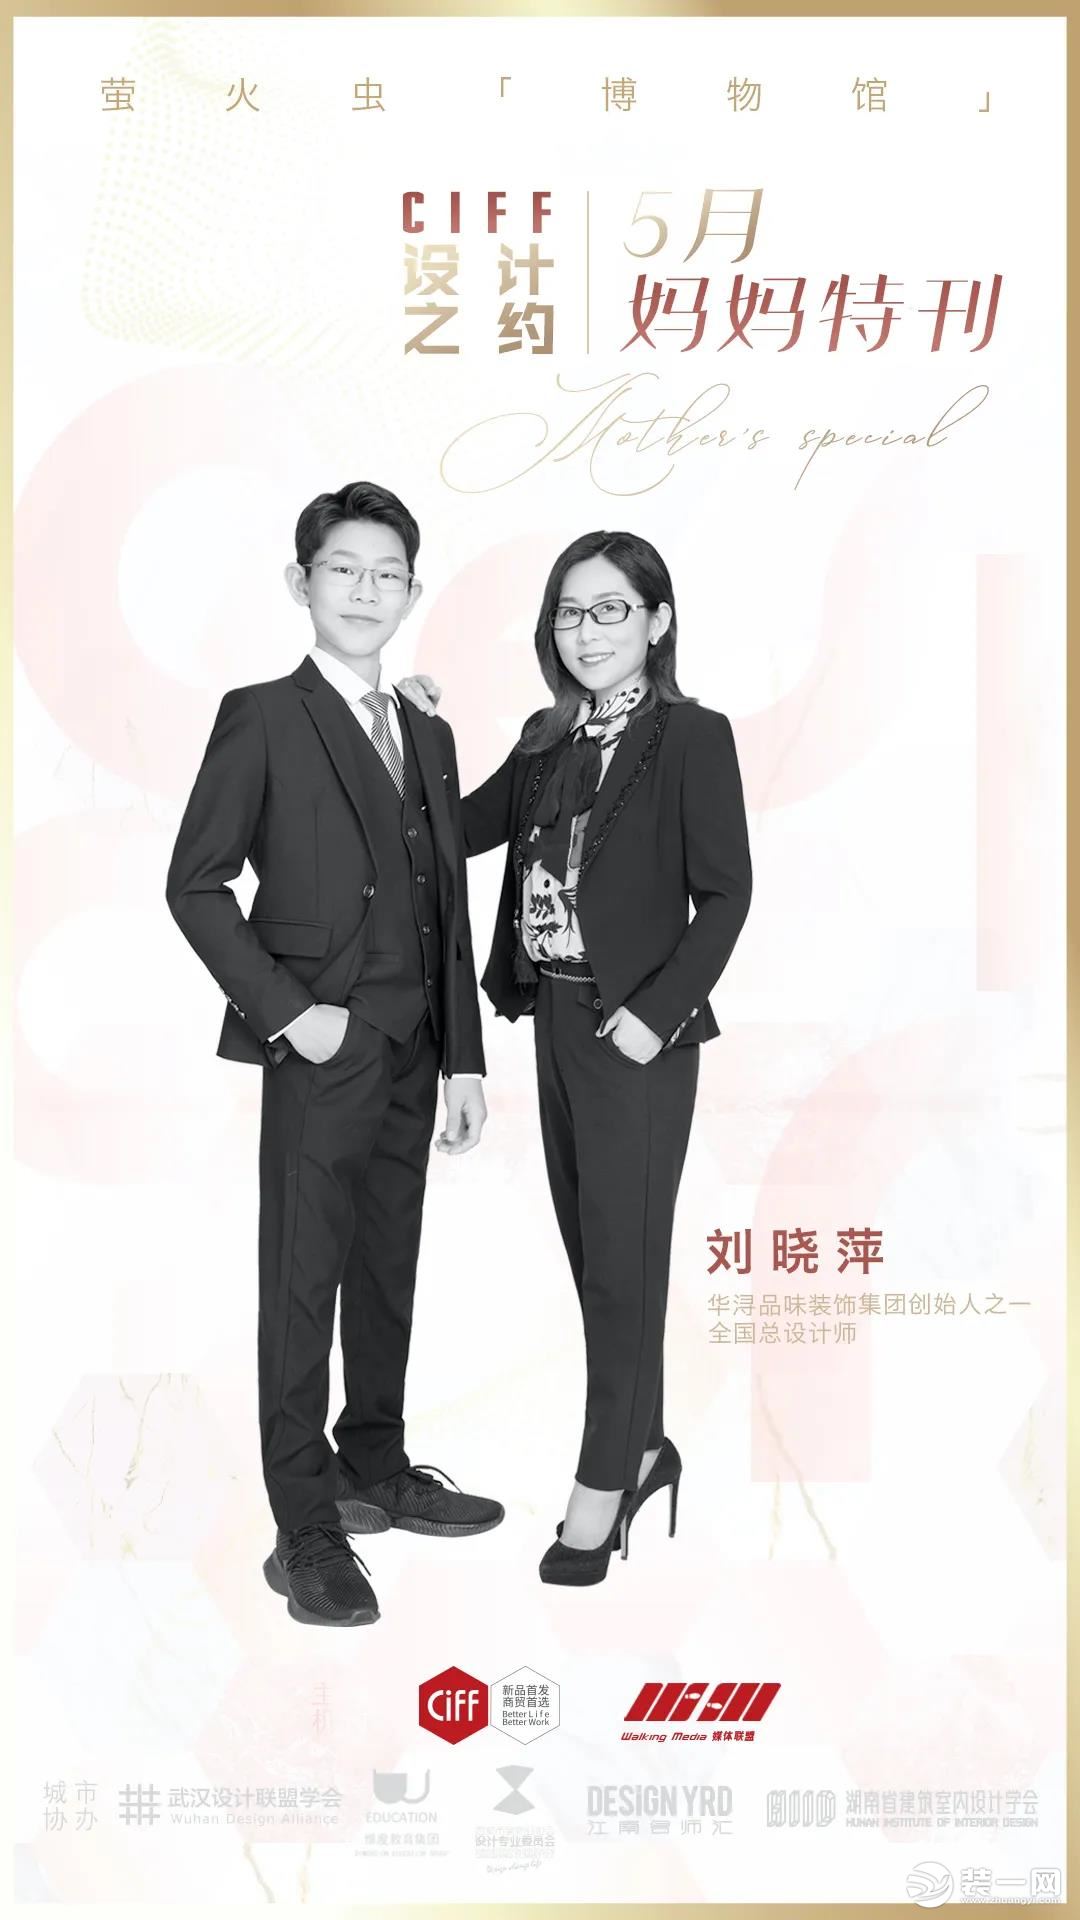 刘晓萍和她的孩子照片